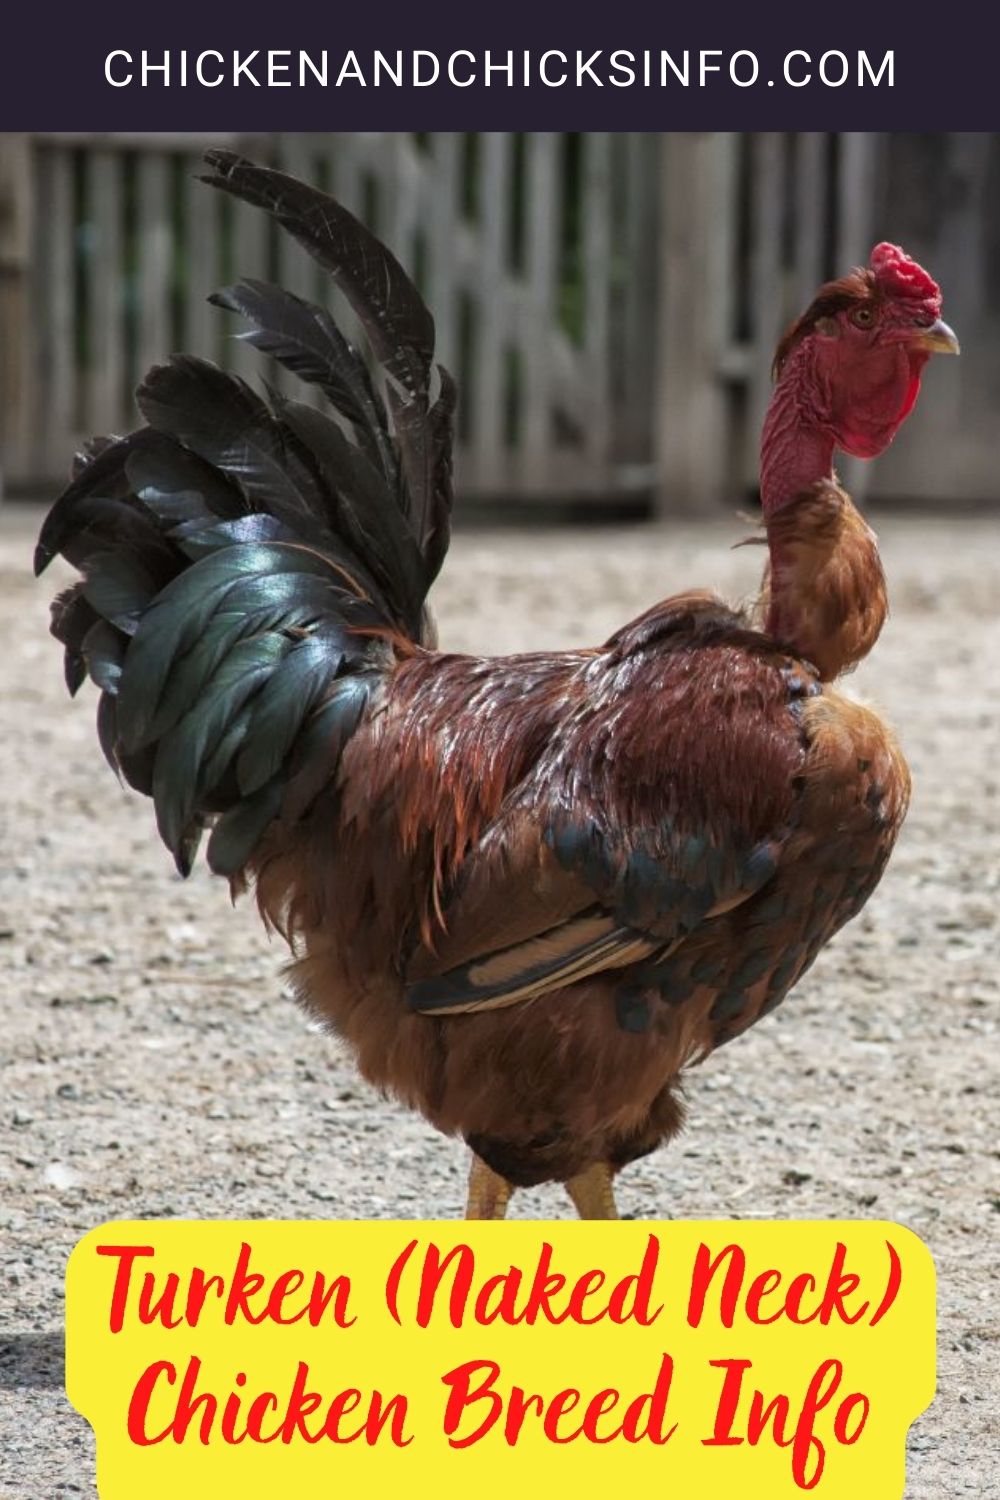 Turken (Naked Neck) Chicken Breed Info pinterest image.